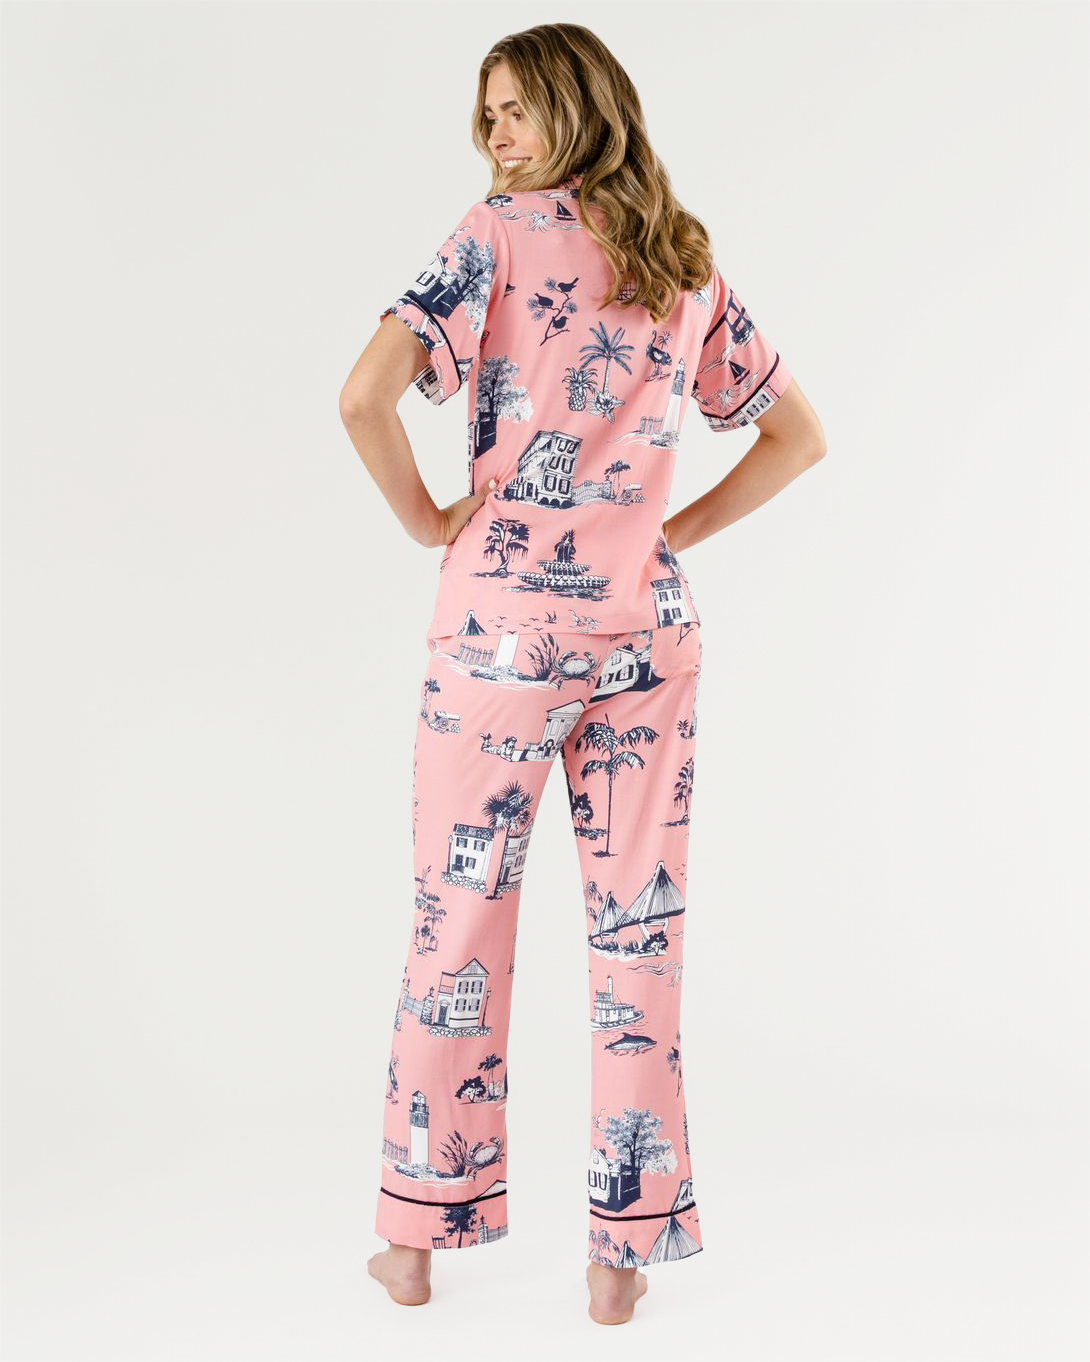 Charleston Toile Pajama Pants Set Pajama Set Katie Kime